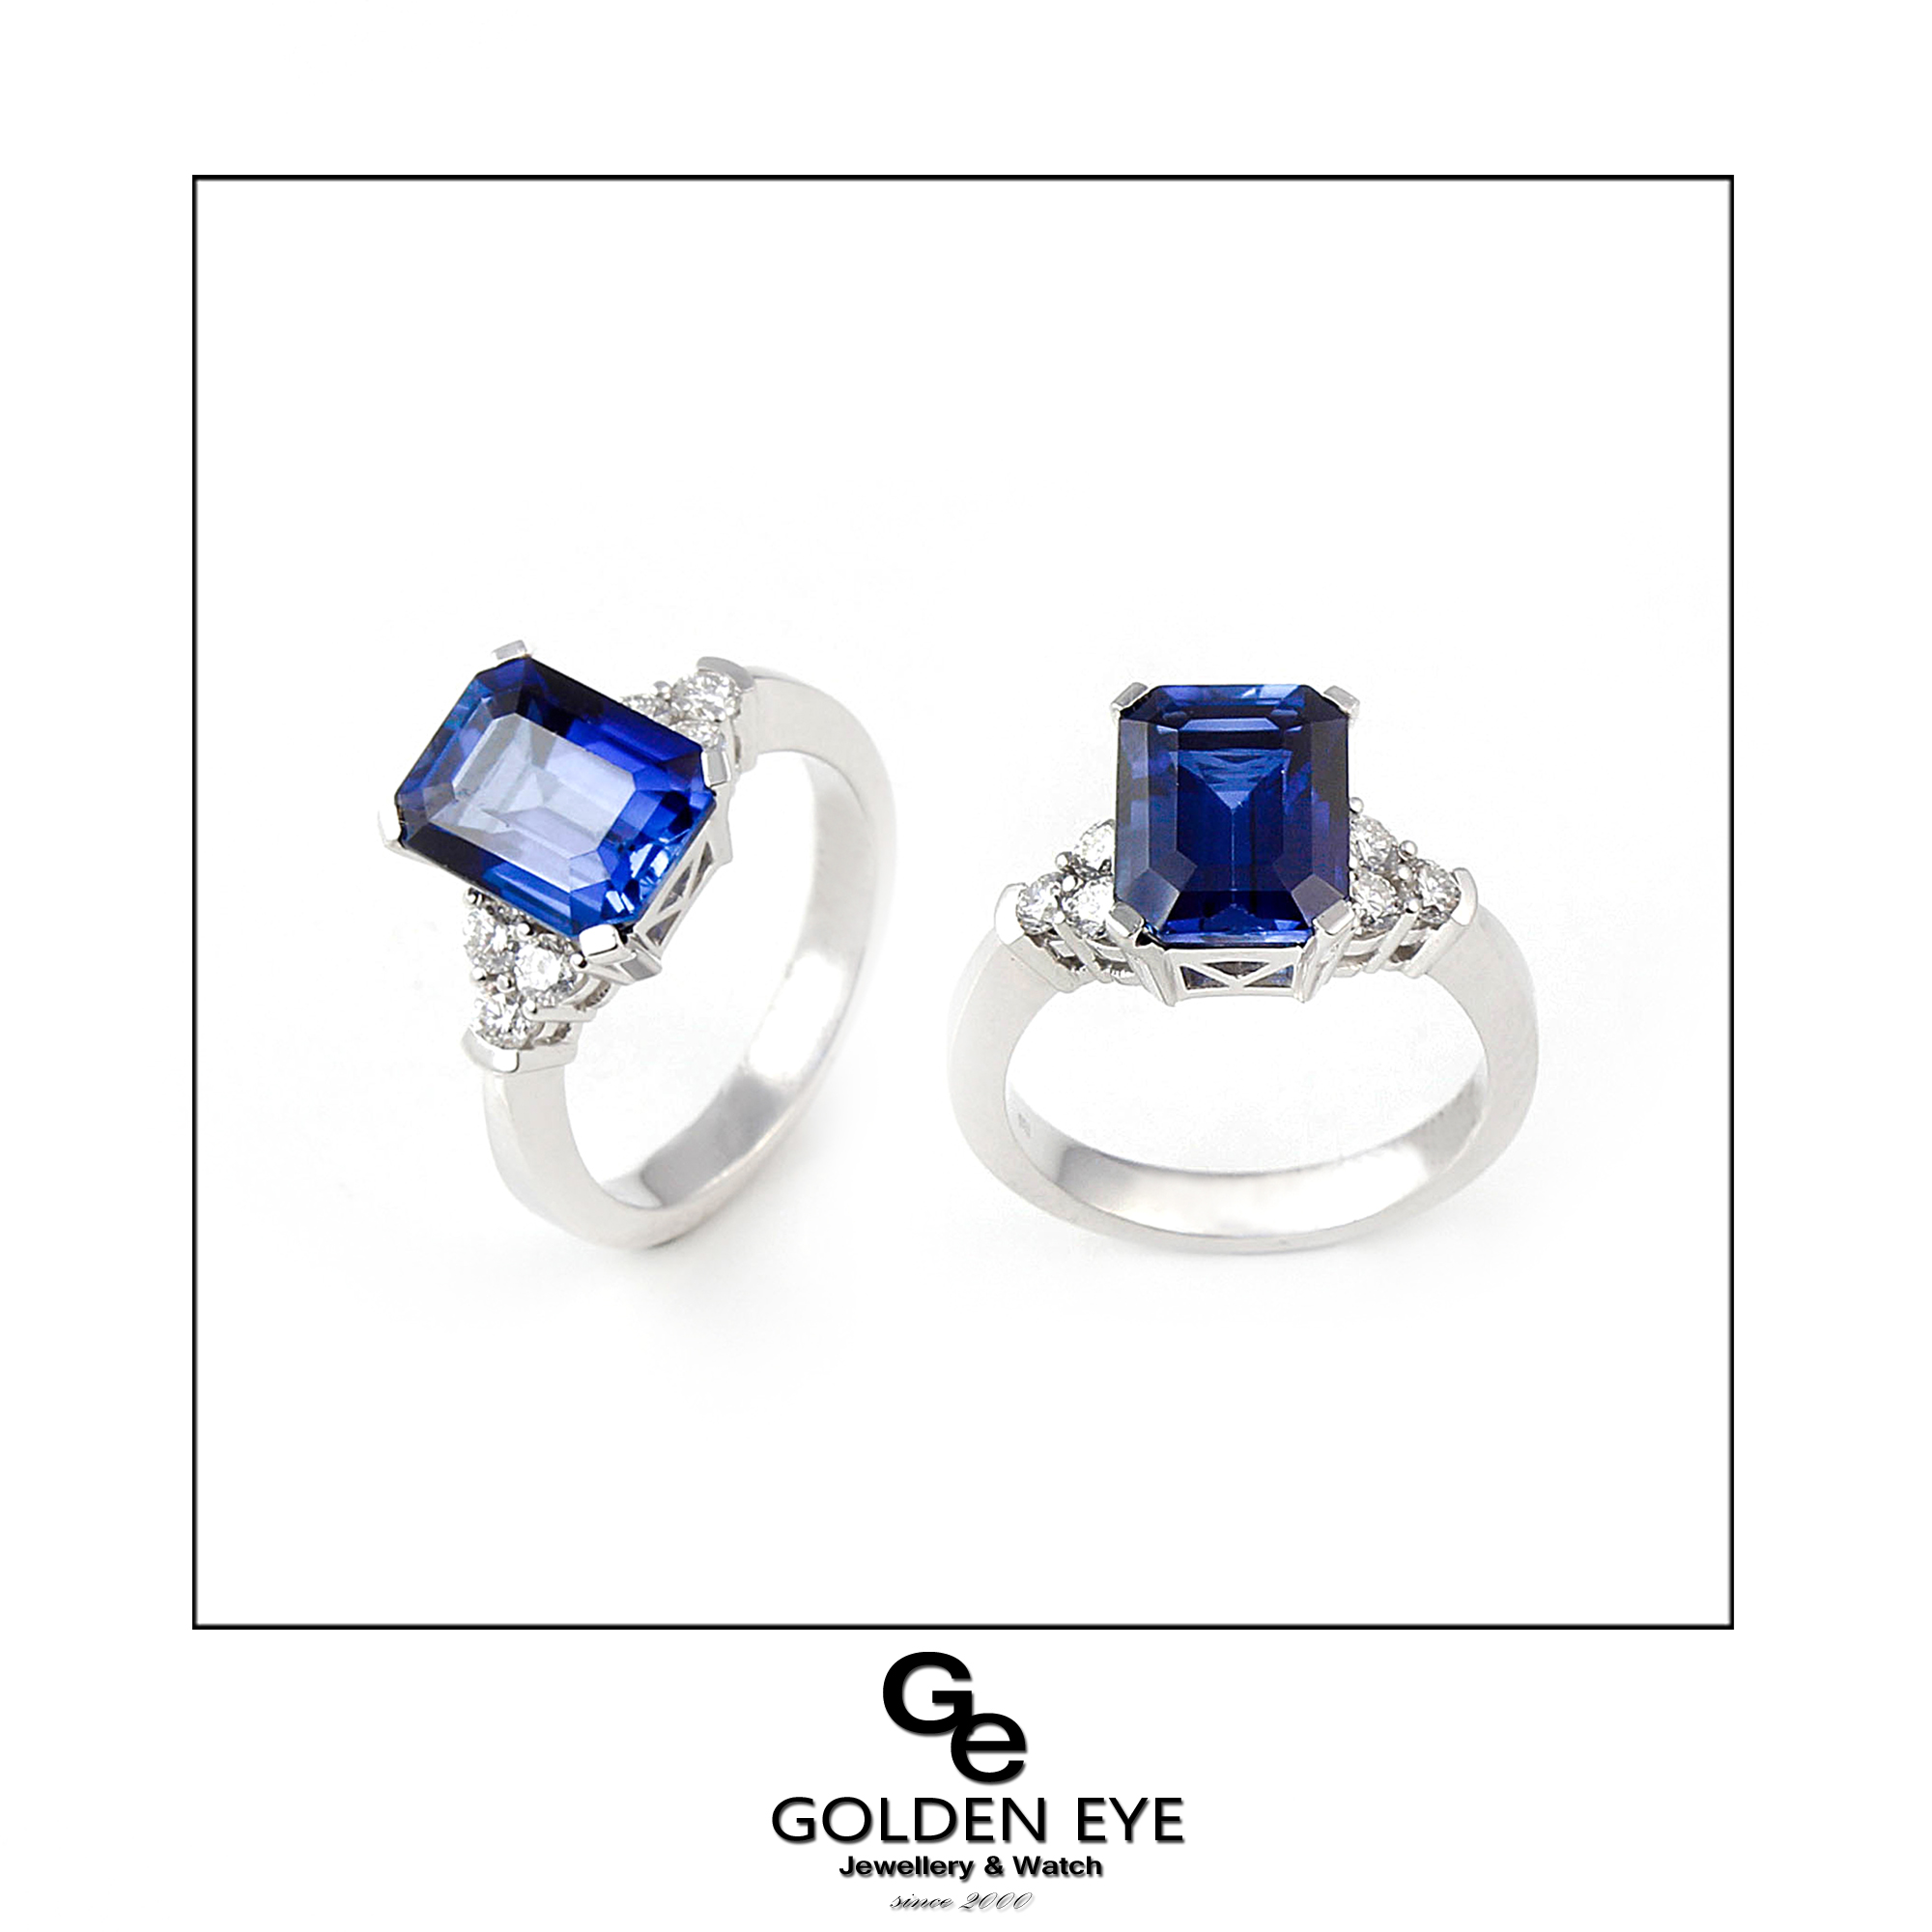 R033A prsteň z bieleho zlata s modrým zafírom a diamantmi